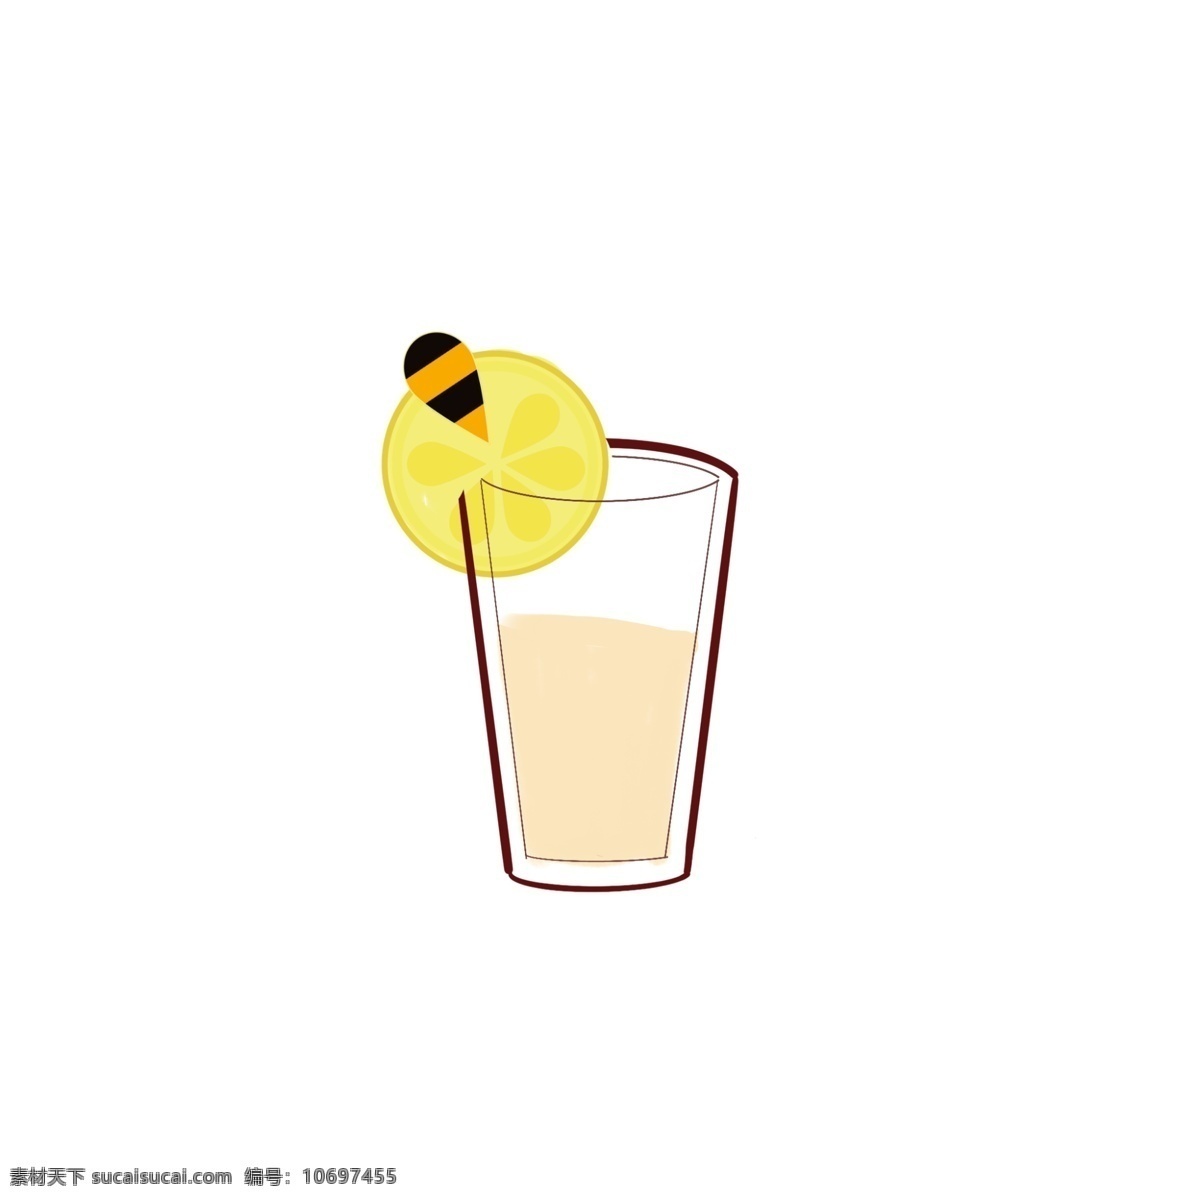 蜂蜜 柠檬 红茶 奶茶店 清新 可爱 饮料 橙色 简约 卡通 奶茶 柠檬茶 装饰